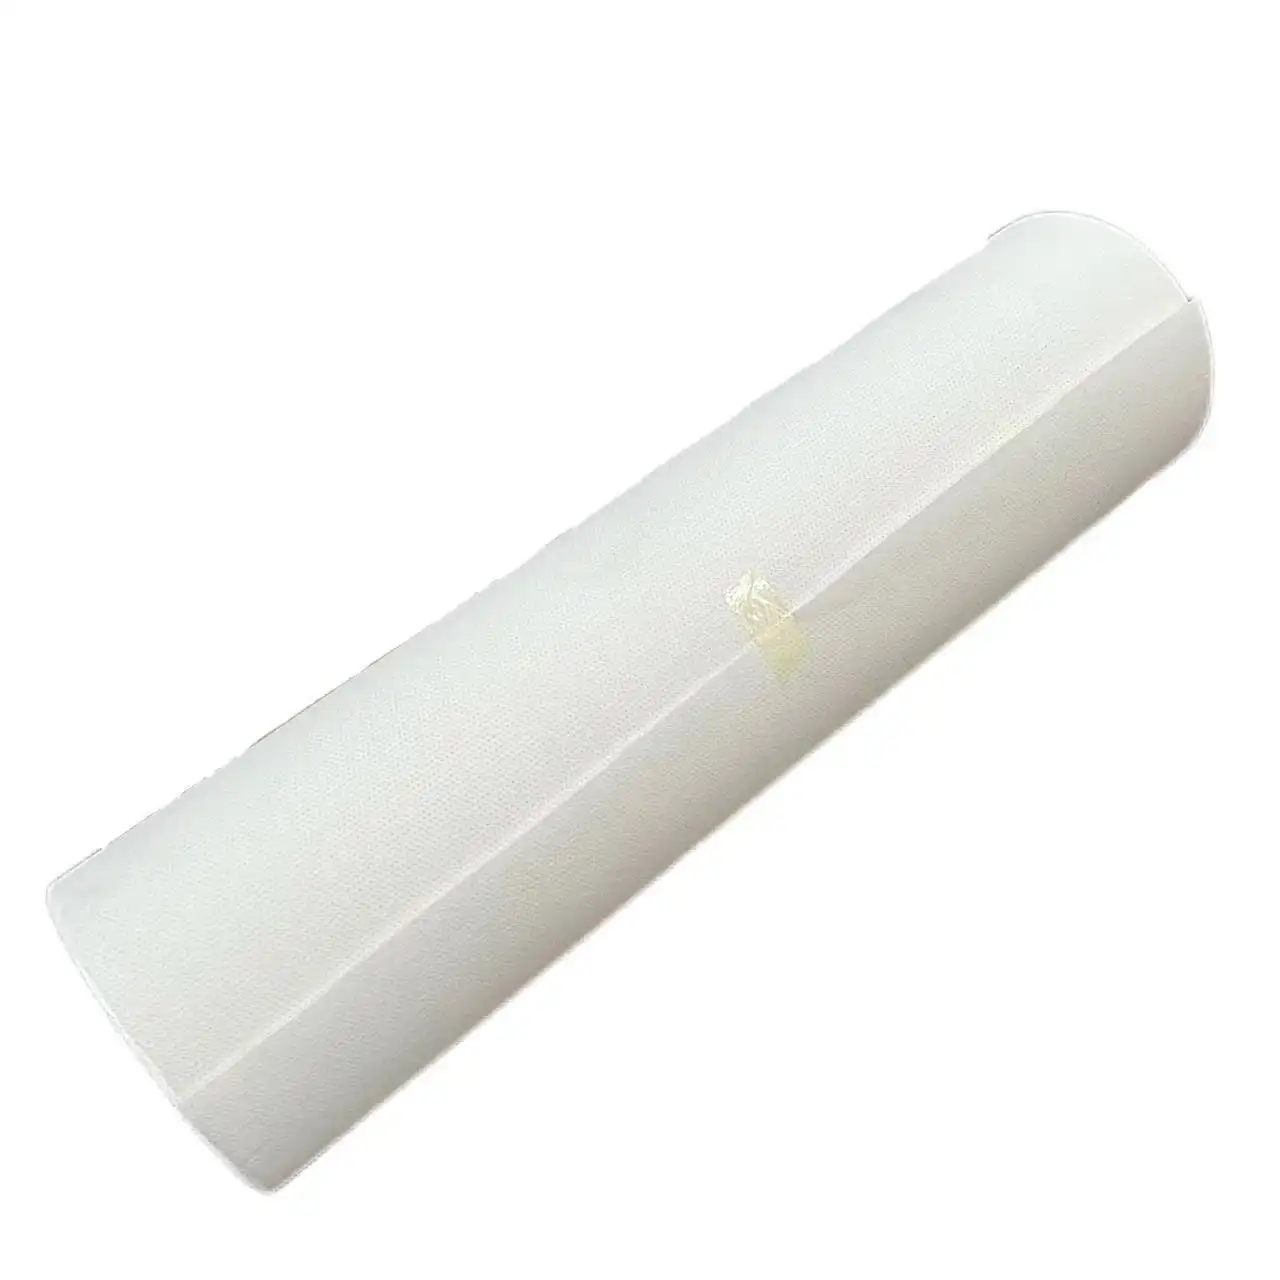 Tappetino in tessuto non tessuto in fibra di vetro poliestere con resistente ai raggi UV e alla corrosione